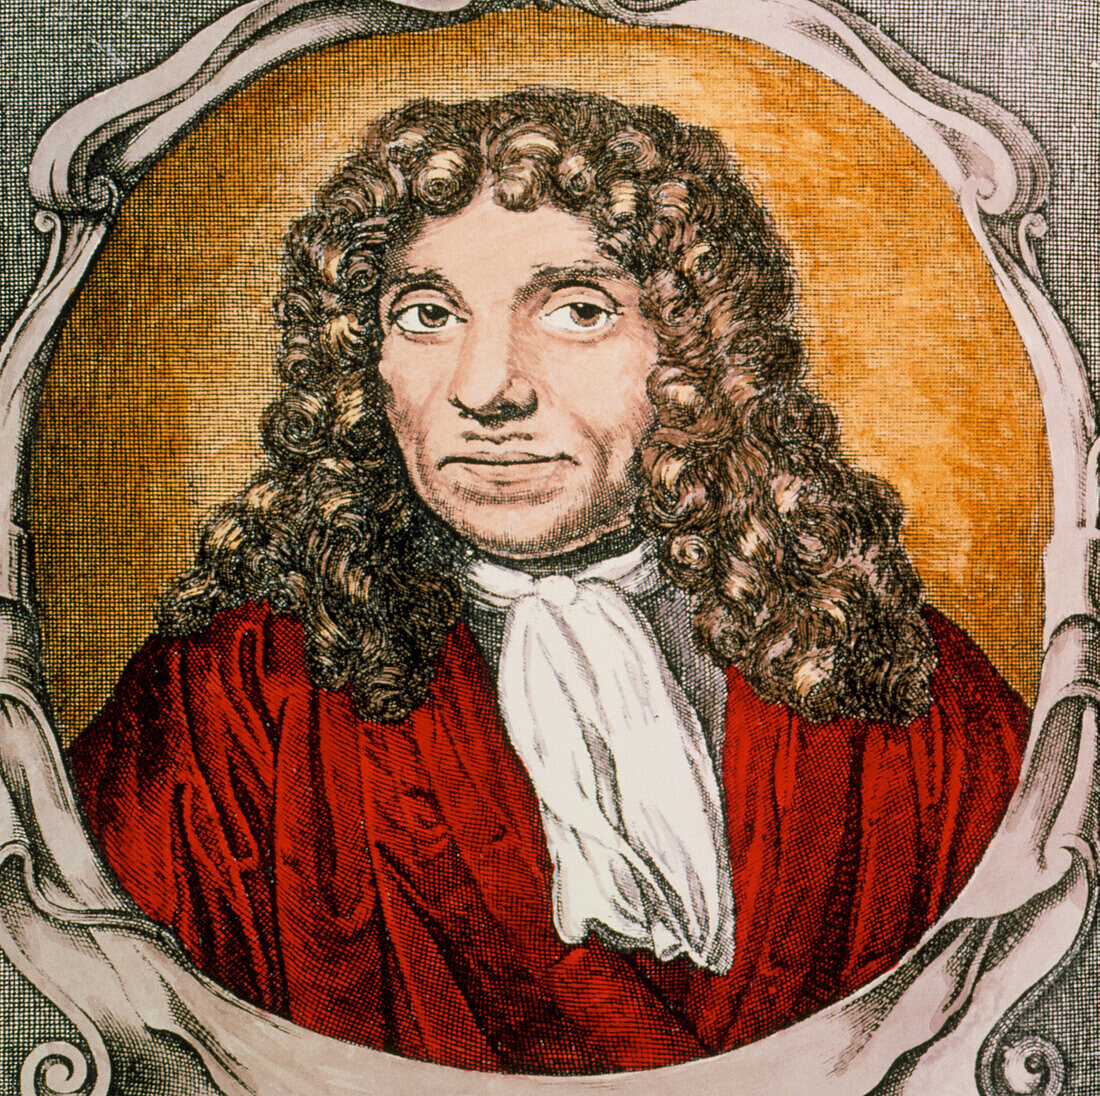 Antoni van Leeuwenhoek Dutch microscopist